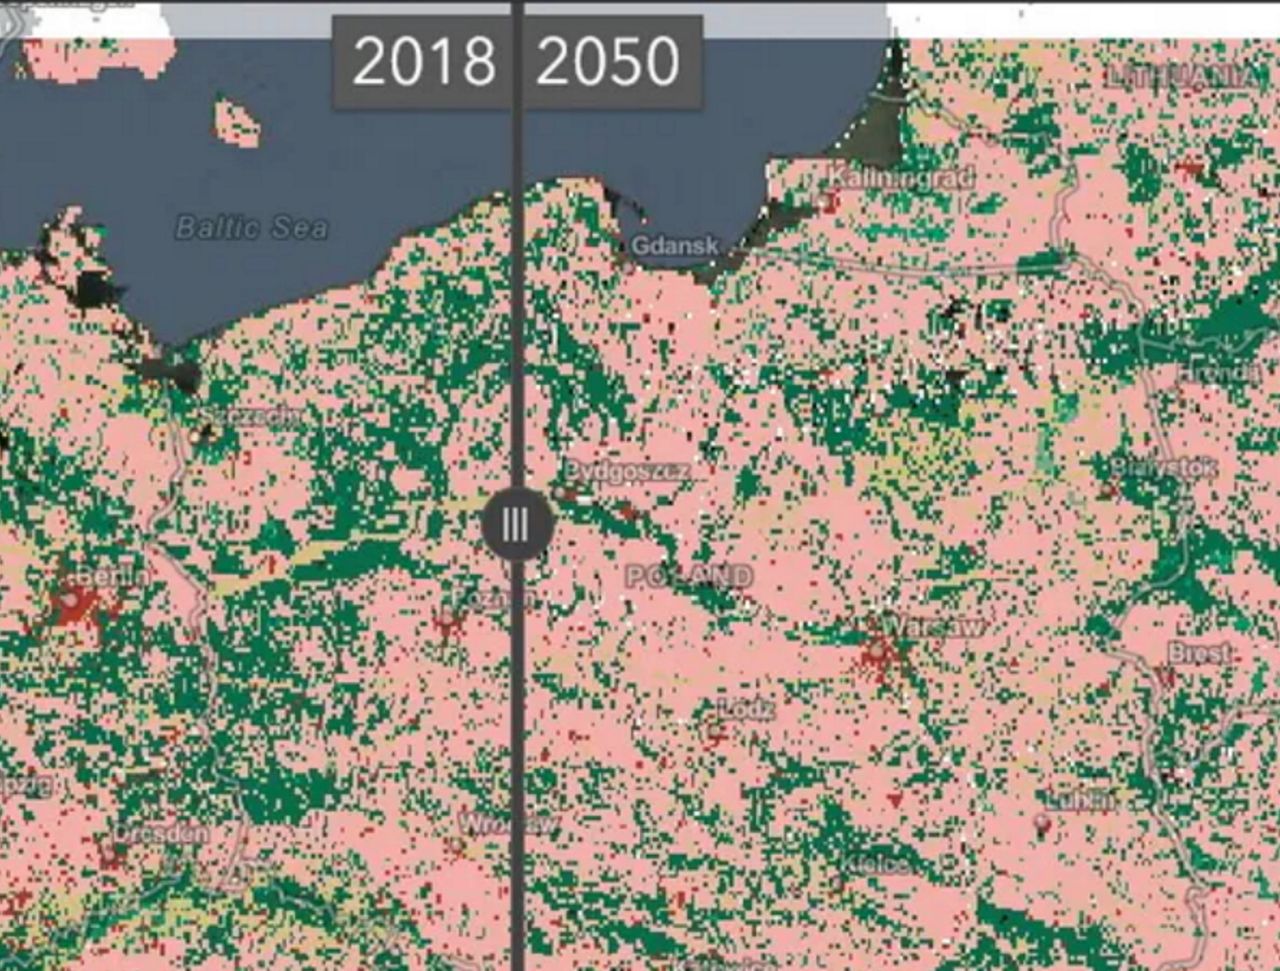 Świat w 2050 roku. Oto mapa, która pozwoli zobaczyć wszystkie zmiany - Esri Land Cover 2050 - interaktywna mapa świata